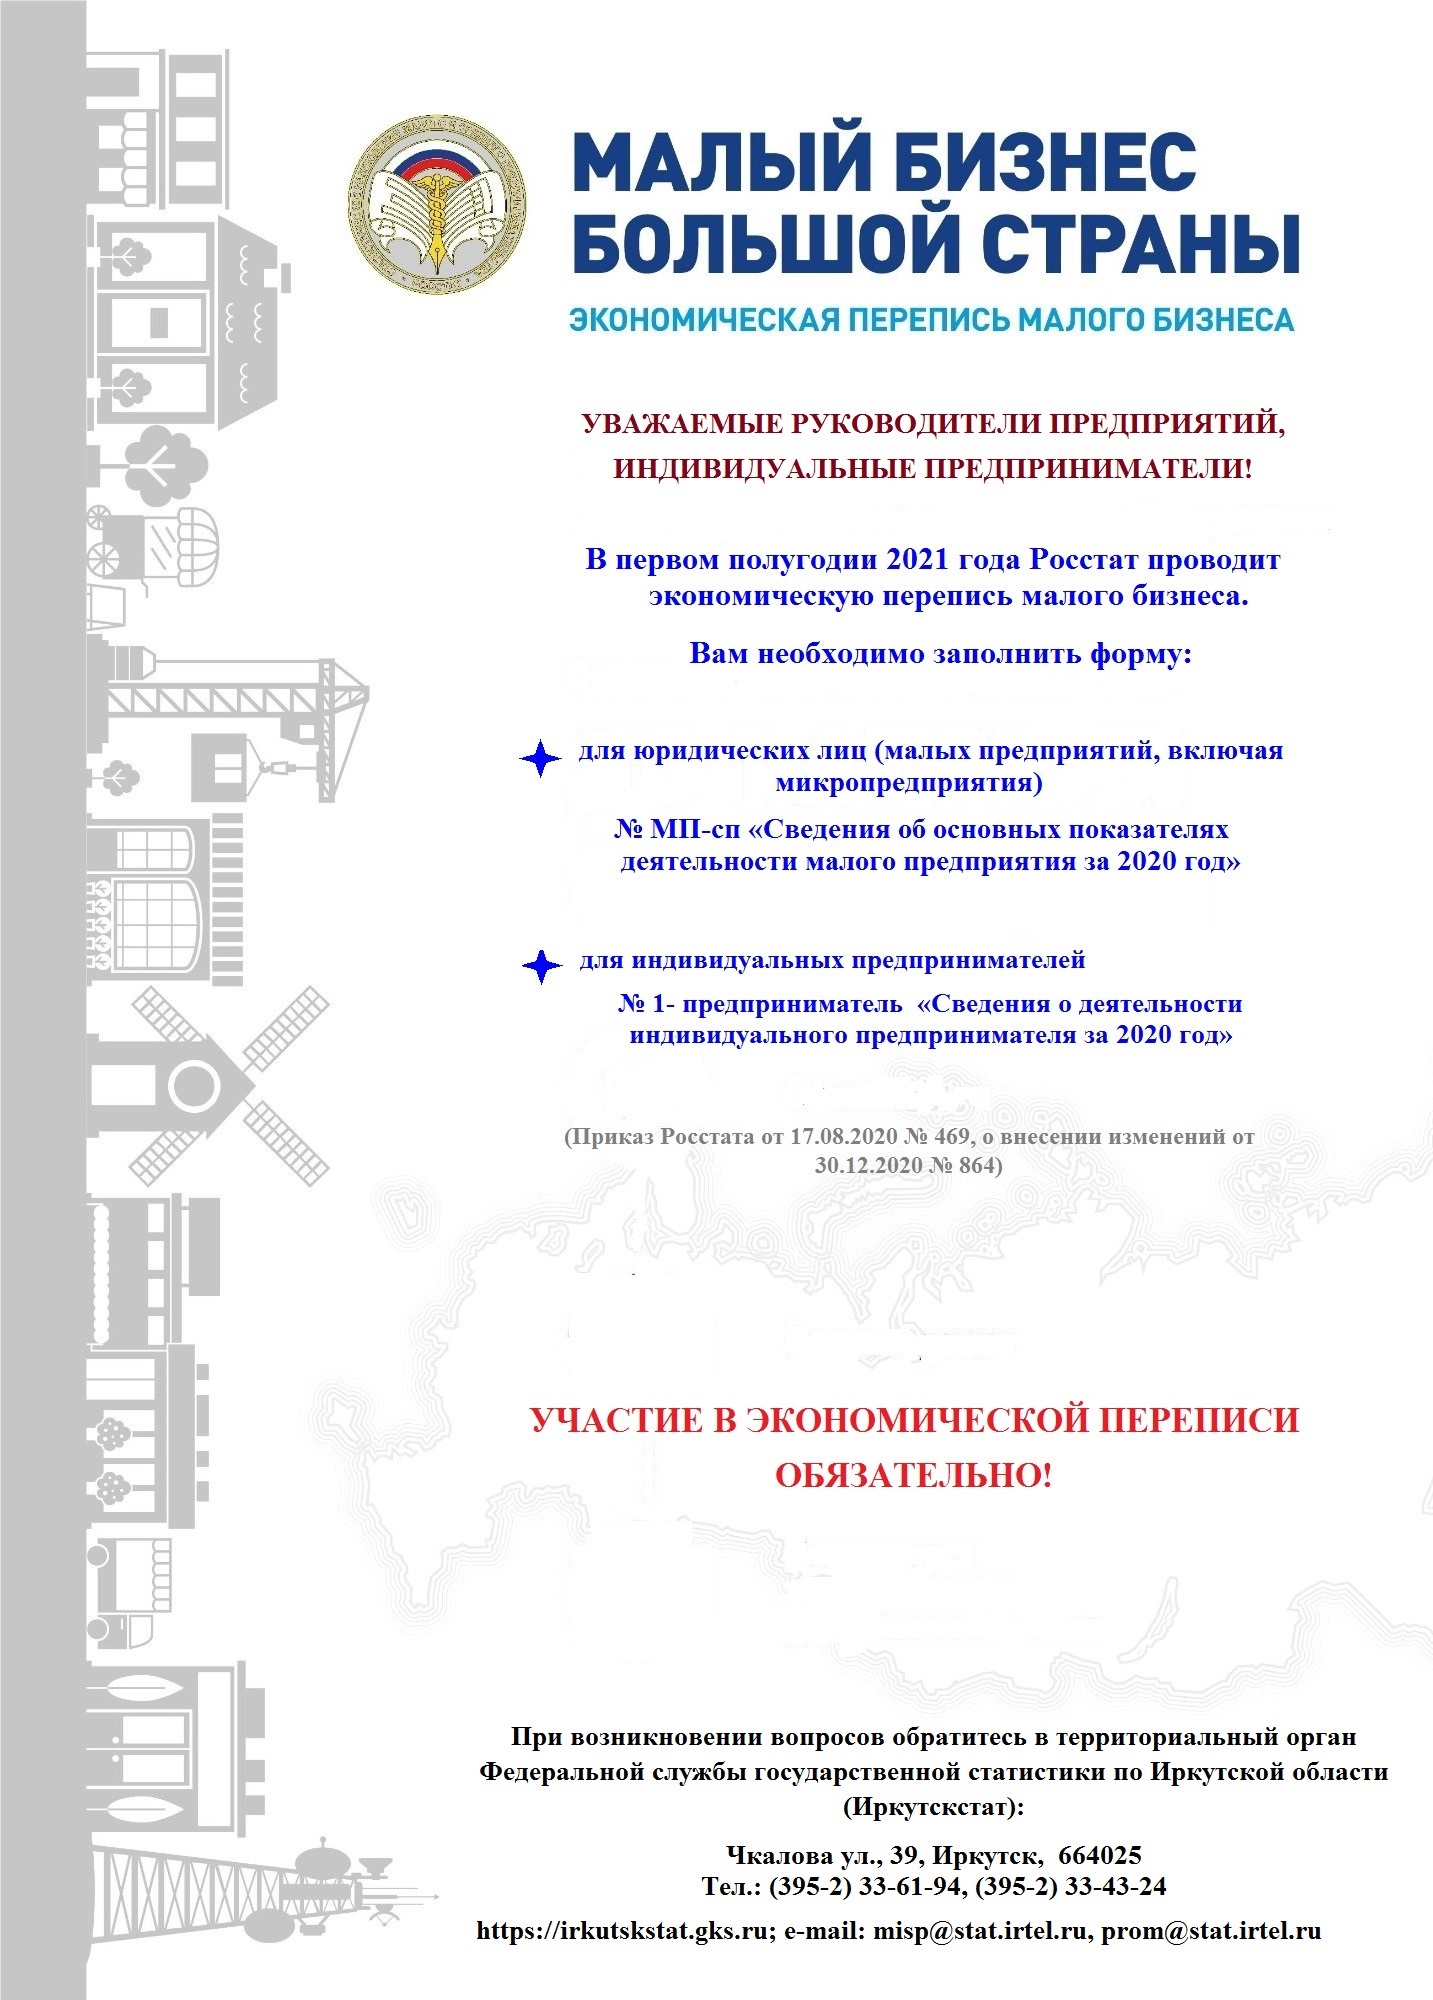 Статья: Основные цели государственной политики в области развития малого предпринимательства в Российской Федерации